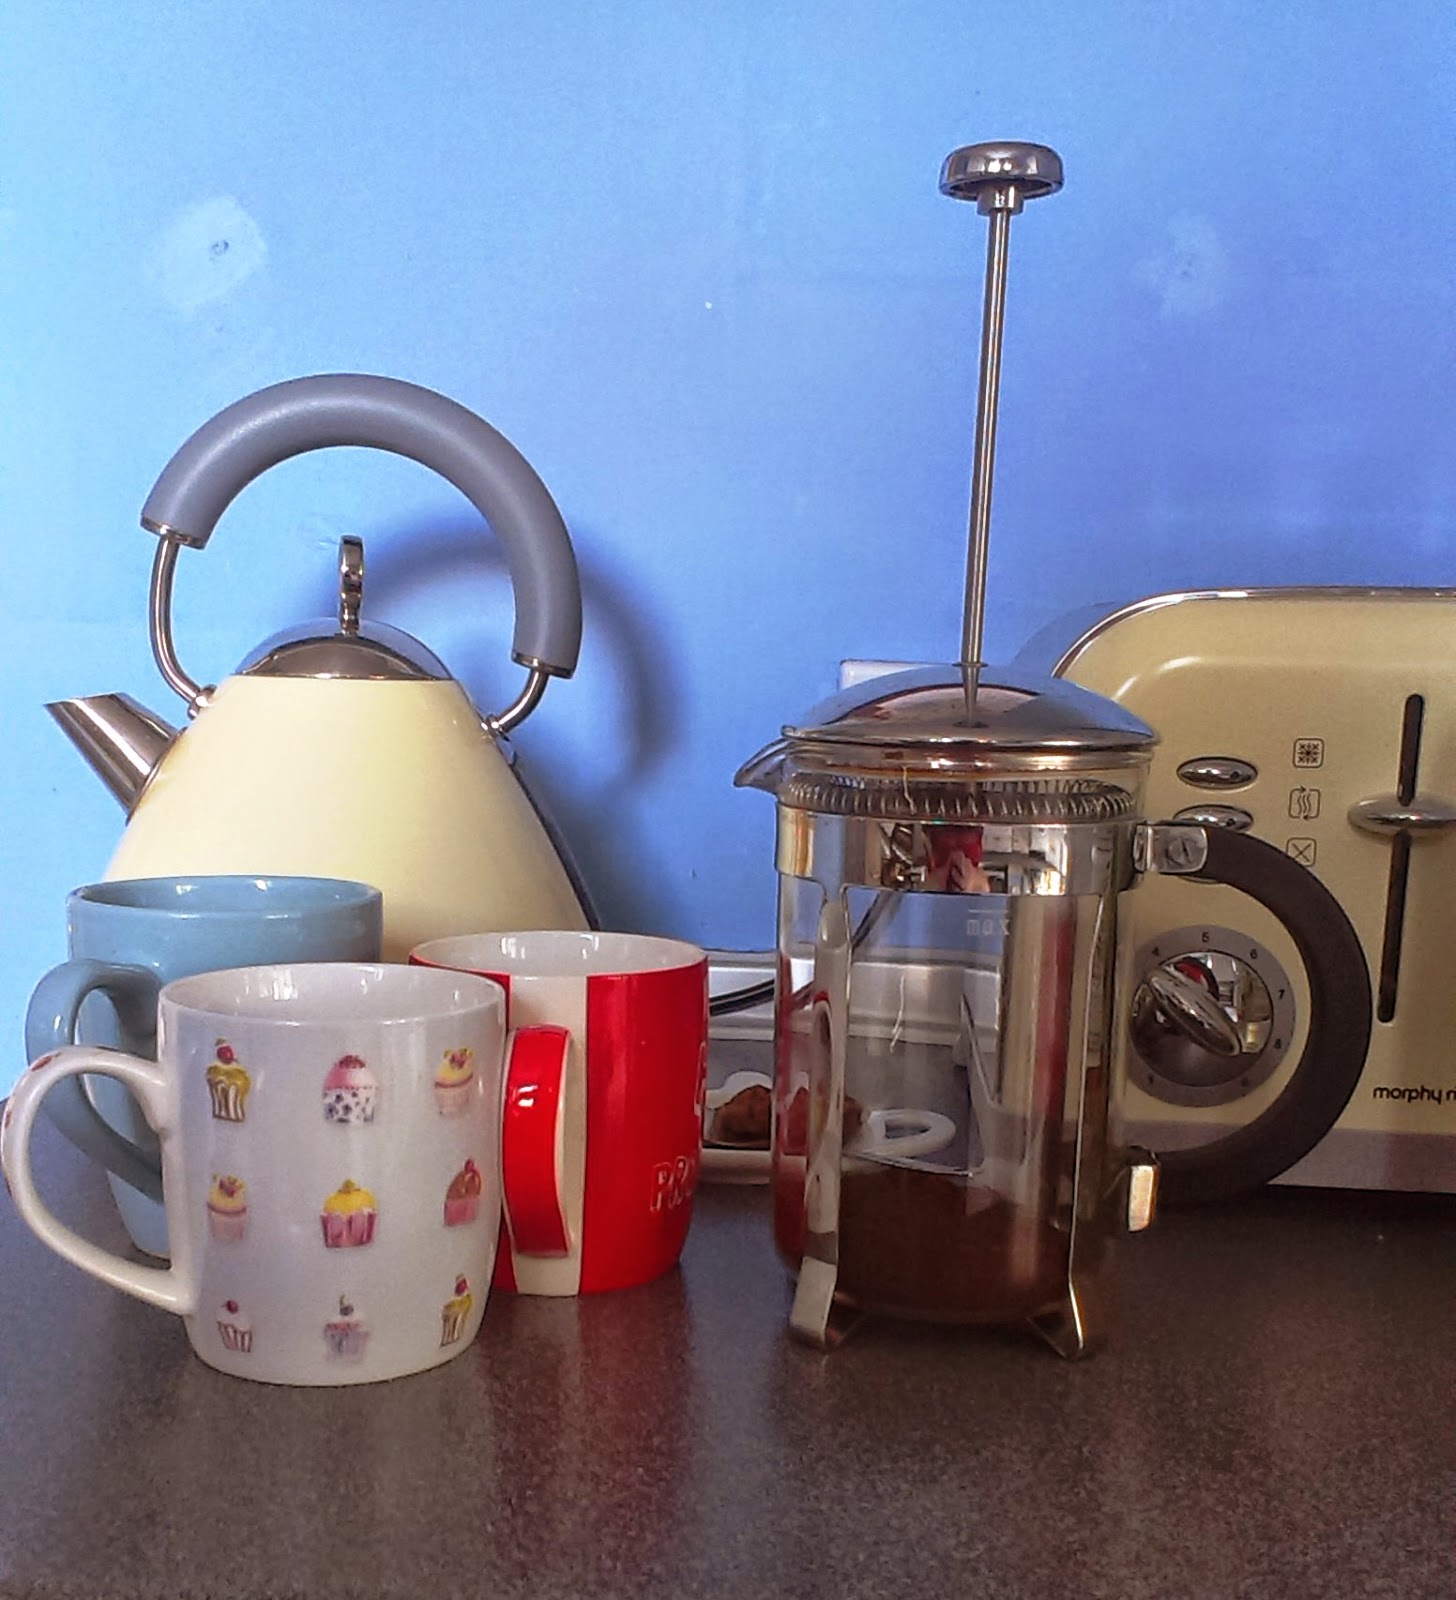 10am - tea and coffee